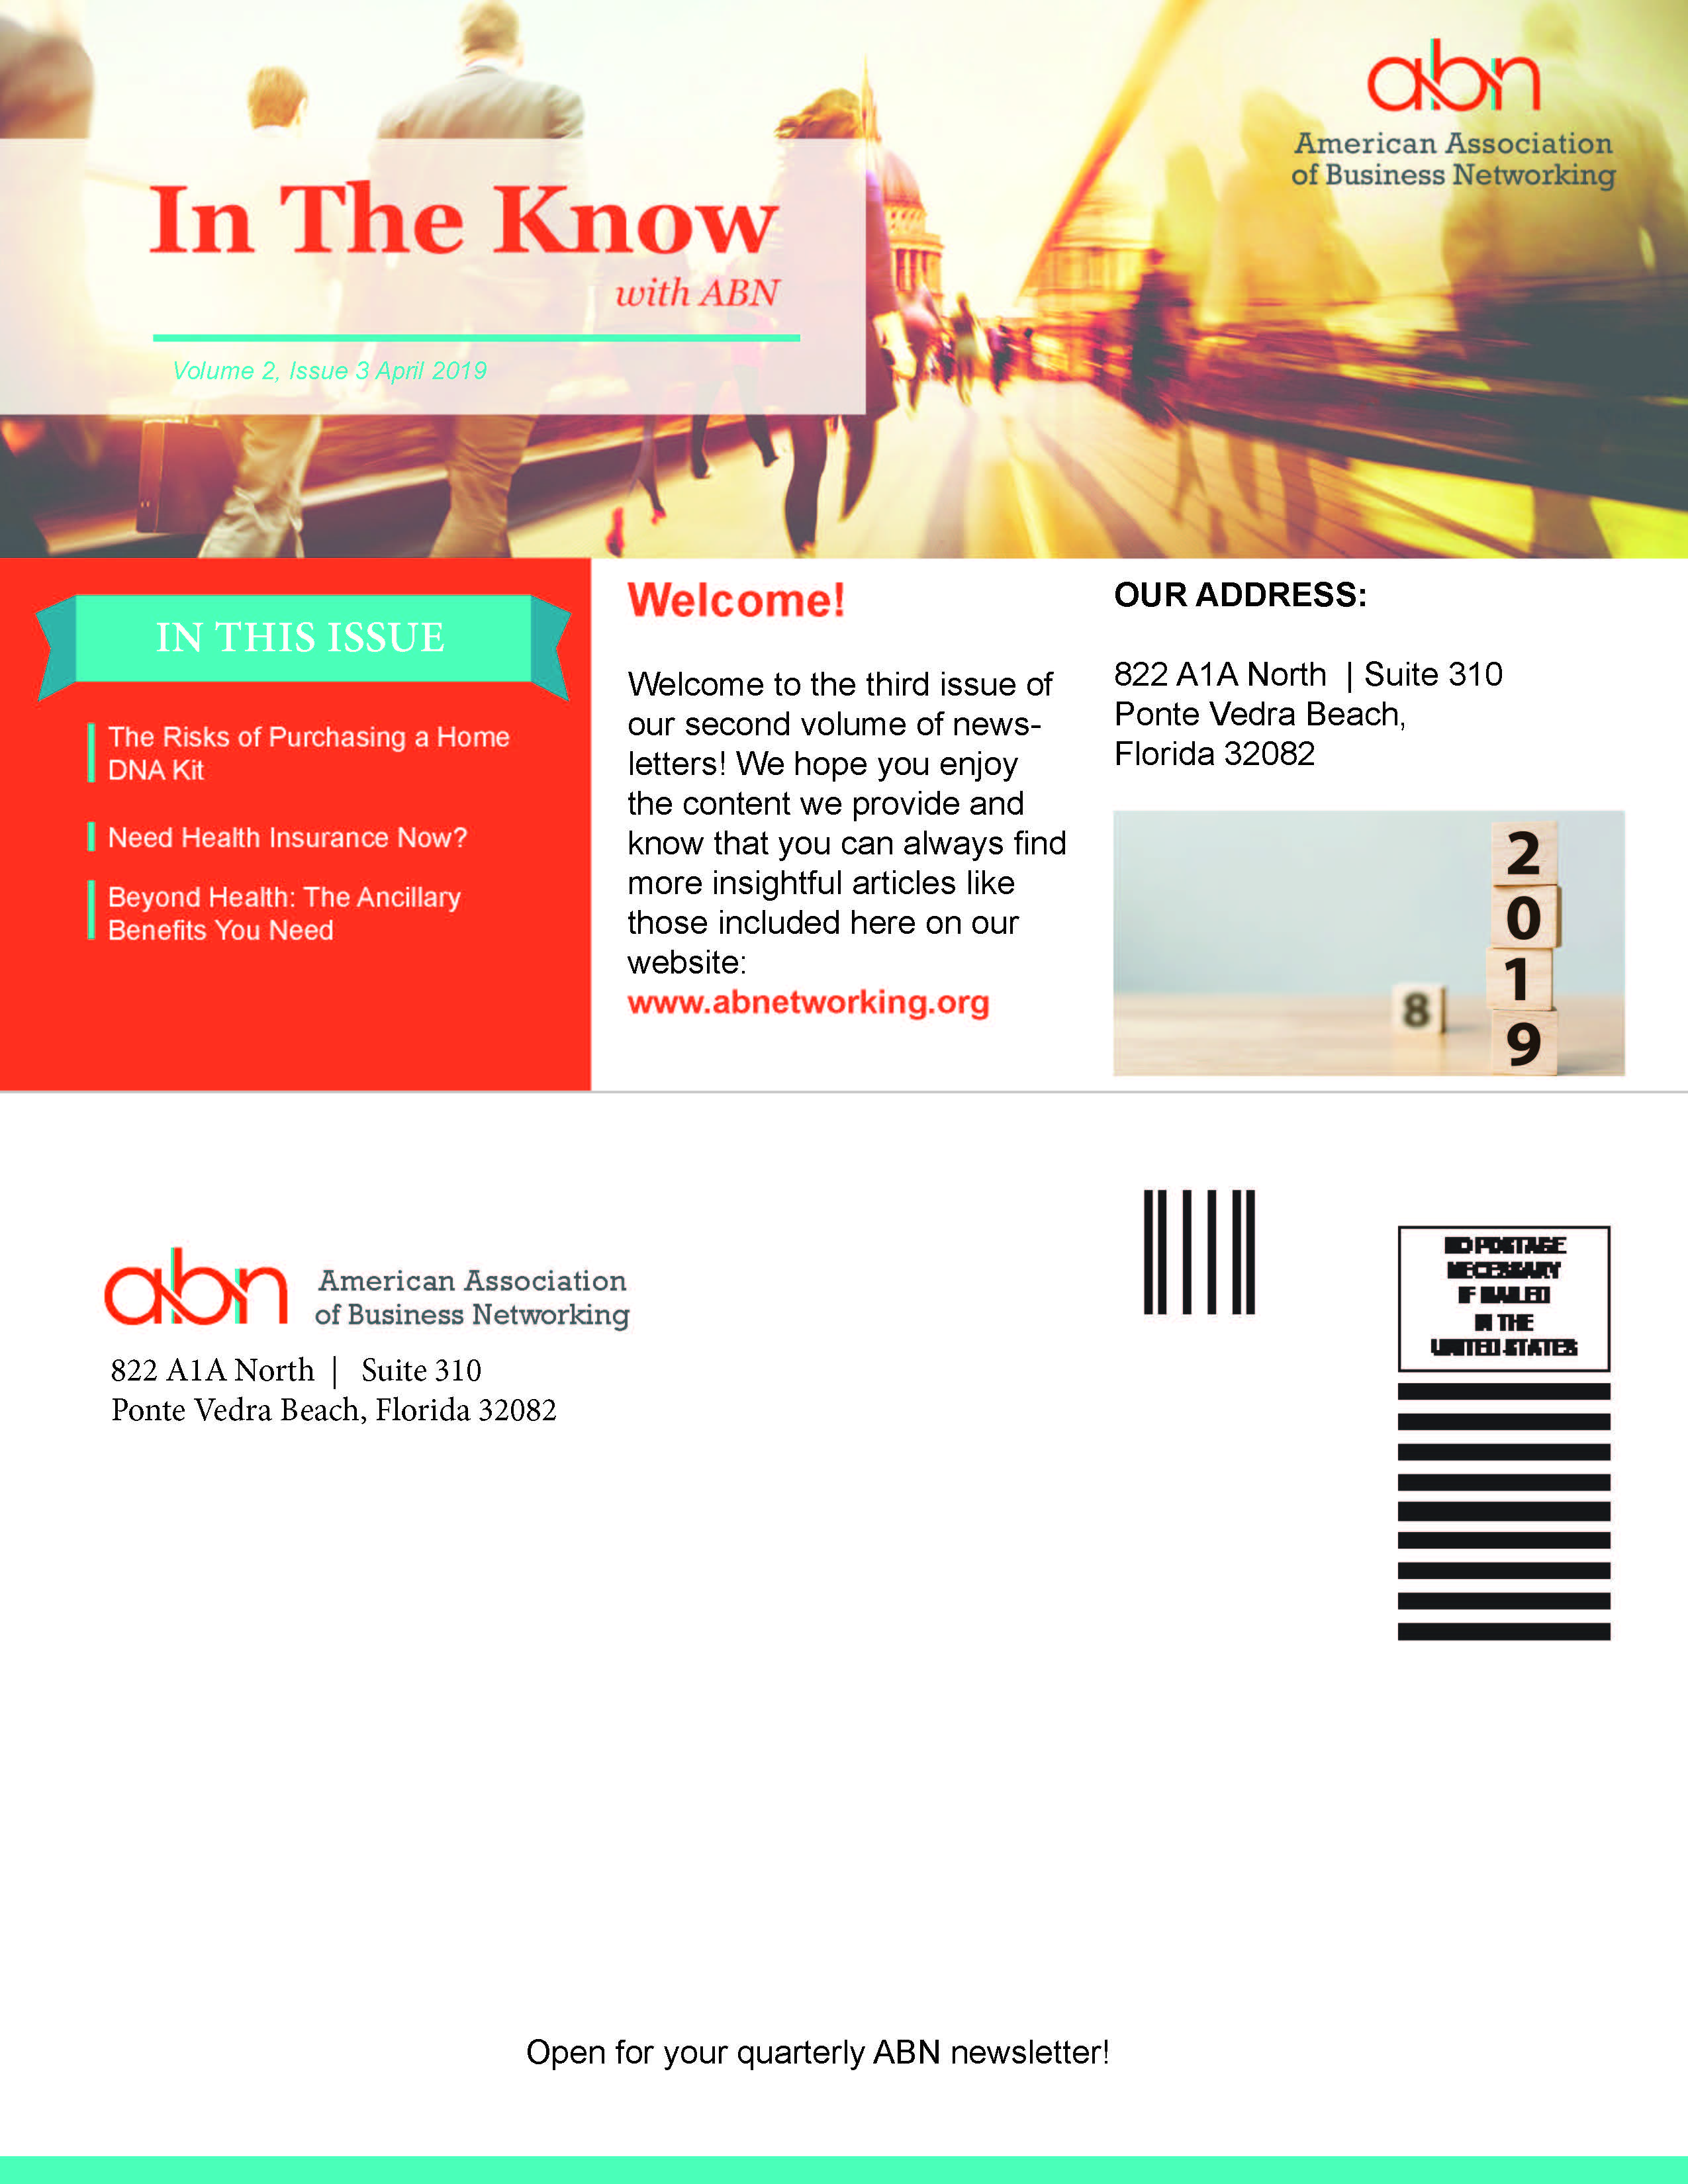 ABN Quarterly Newsletter April 2019 Volume 2 Issue 3 img 1